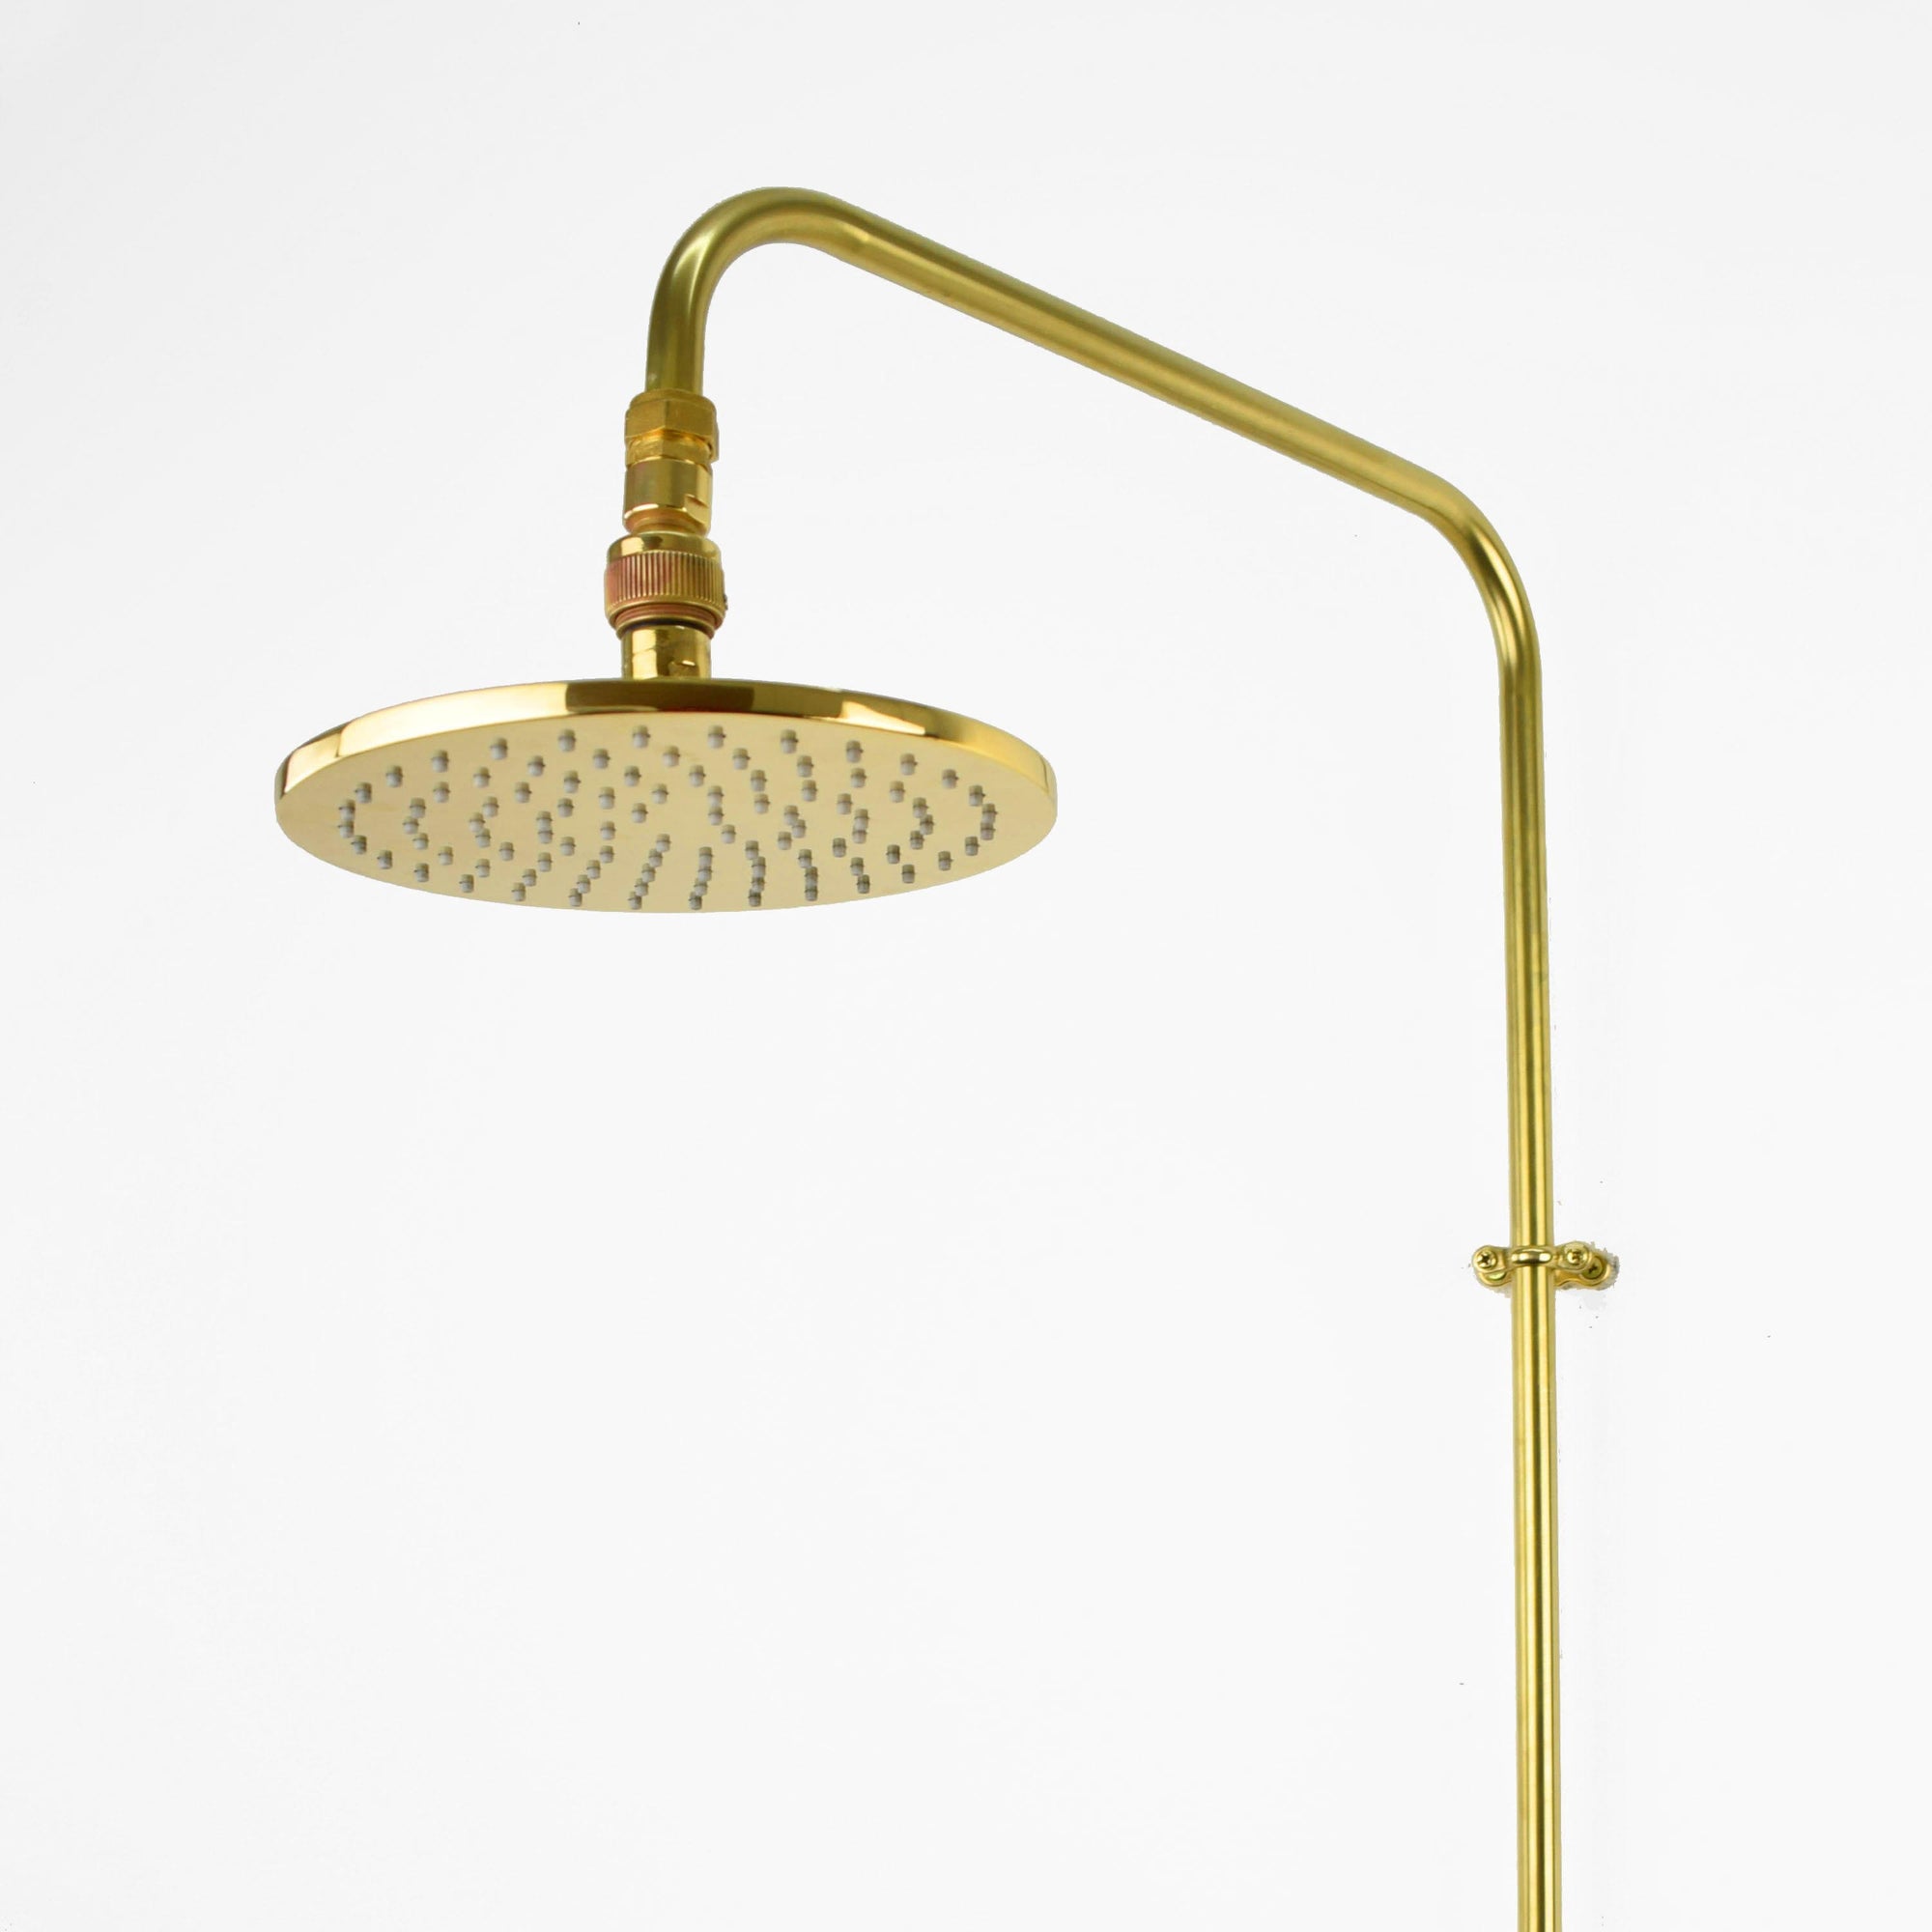 Brass Shower Head - Flat Round Minimal - Proper Copper Design